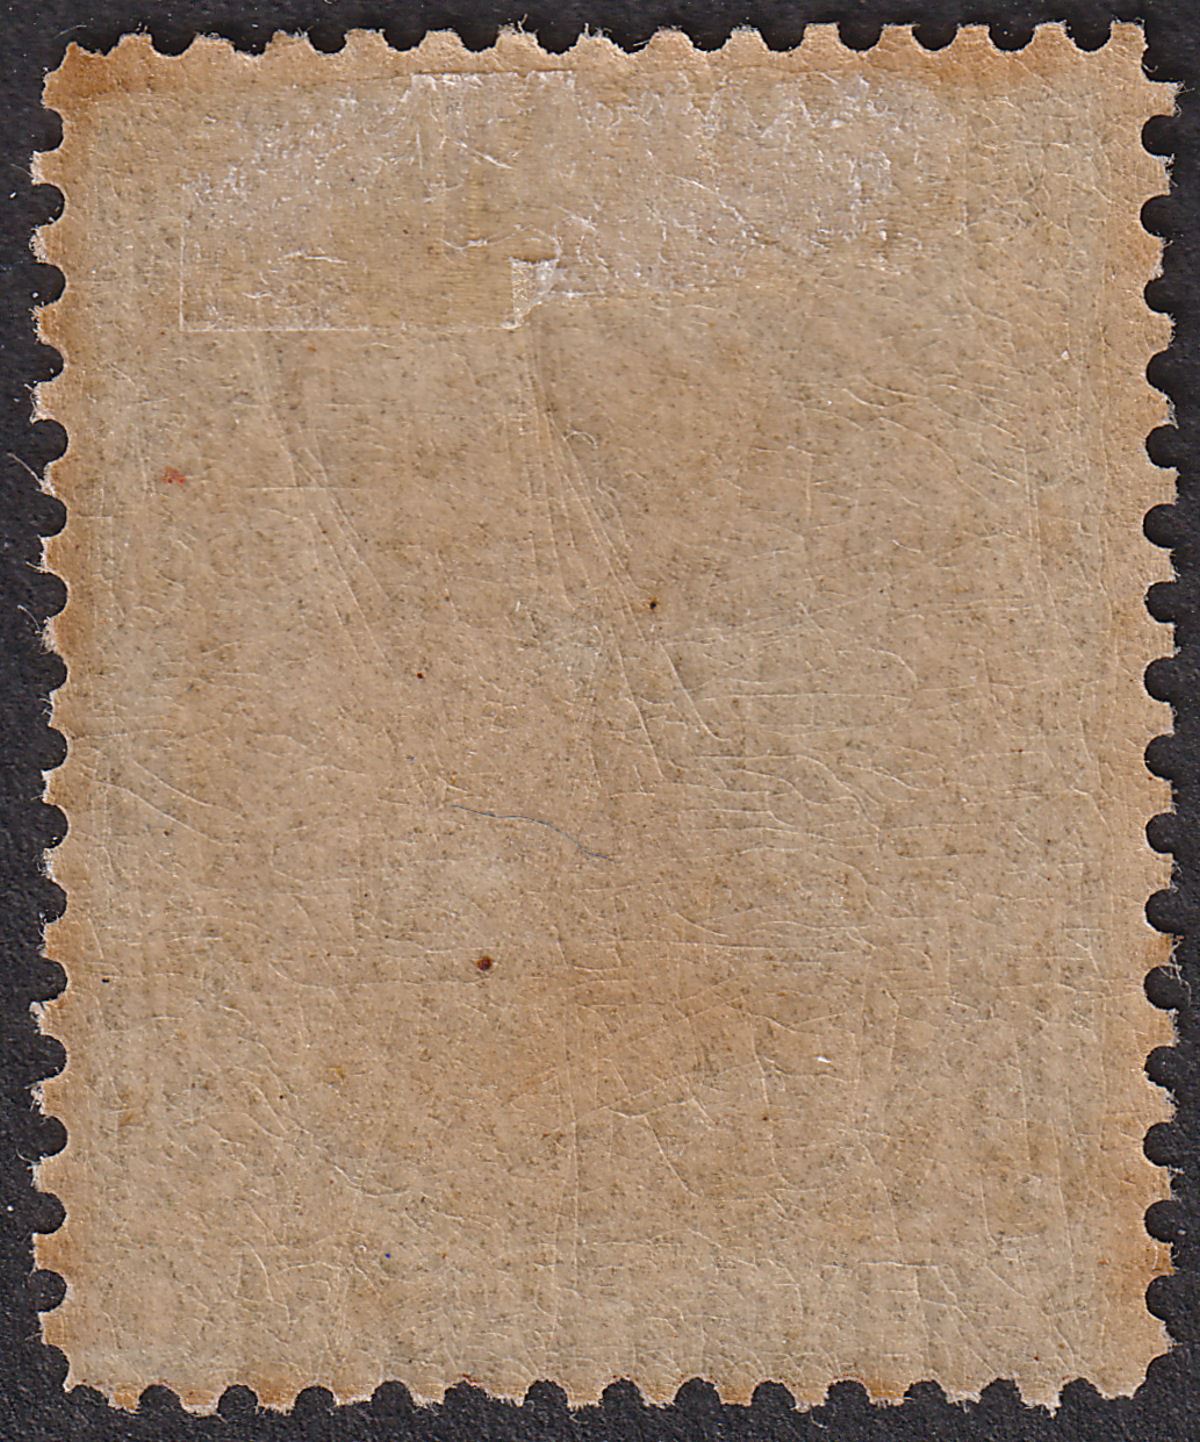 Falkland Islands 1878 QV 1sh Bistre-Brown Mint SG4 cat £85